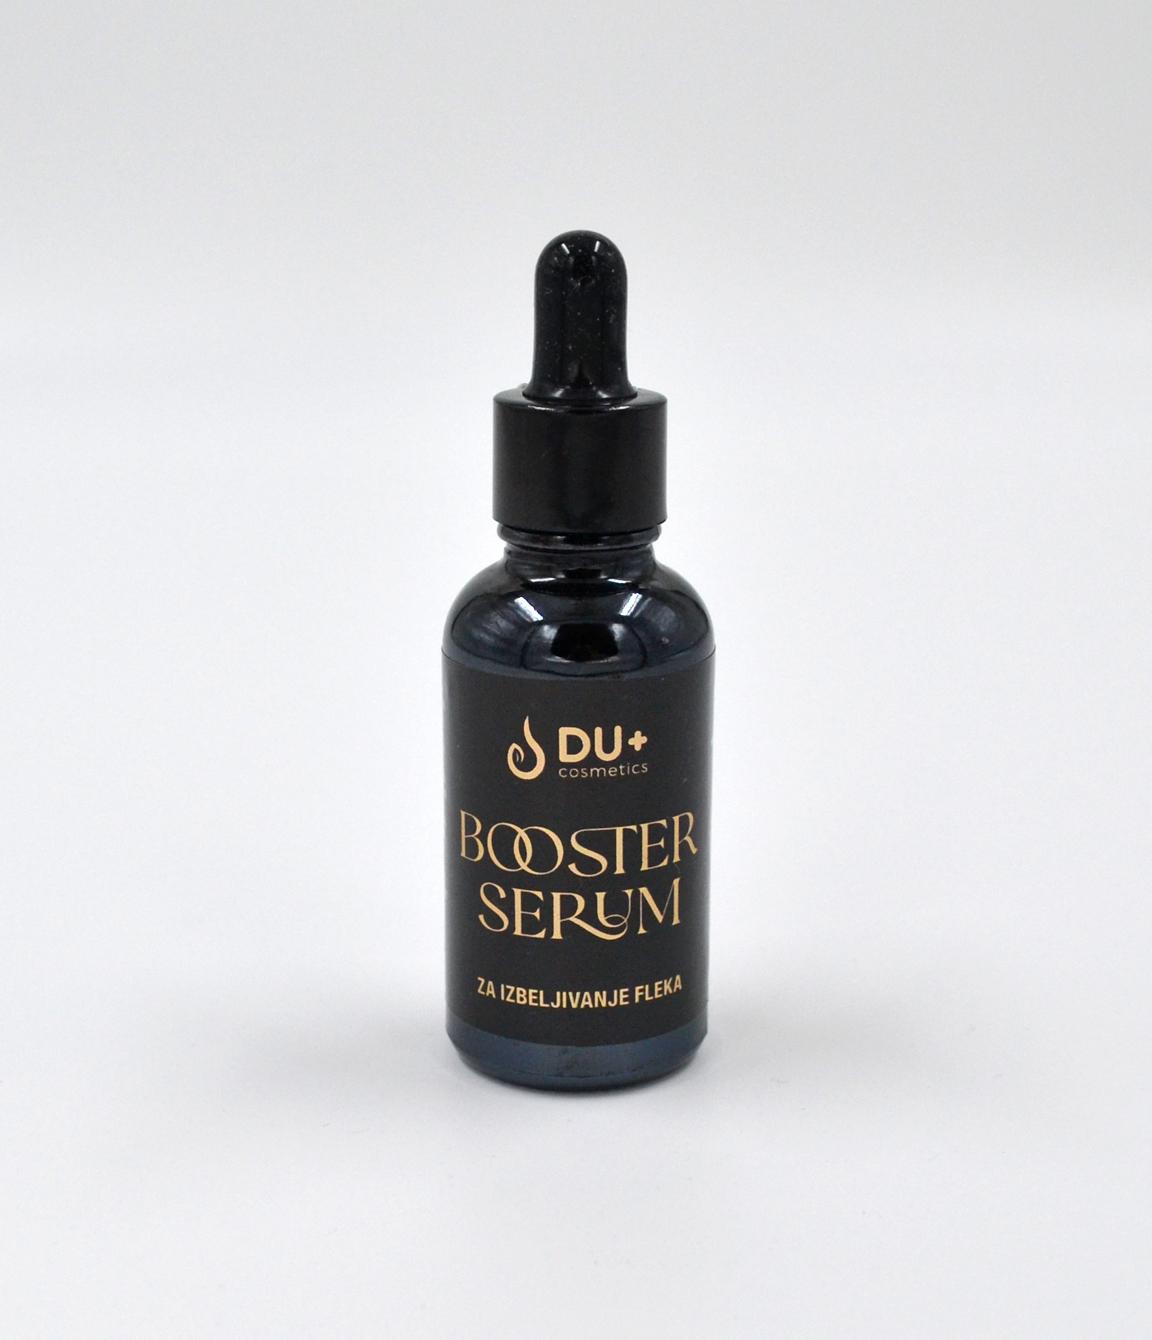 Du+ Cosmetics Booster serum za izbeljivanje fleka za profesionalnu upotrebu, 30ml